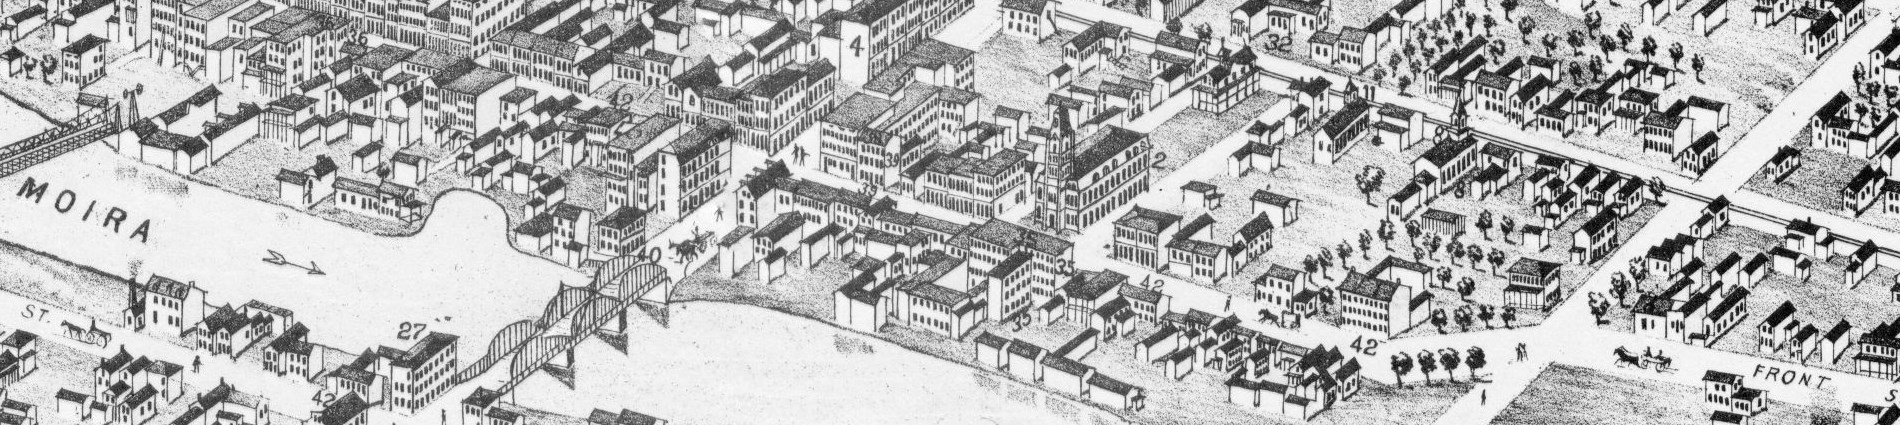 Belleville as seen in 1874